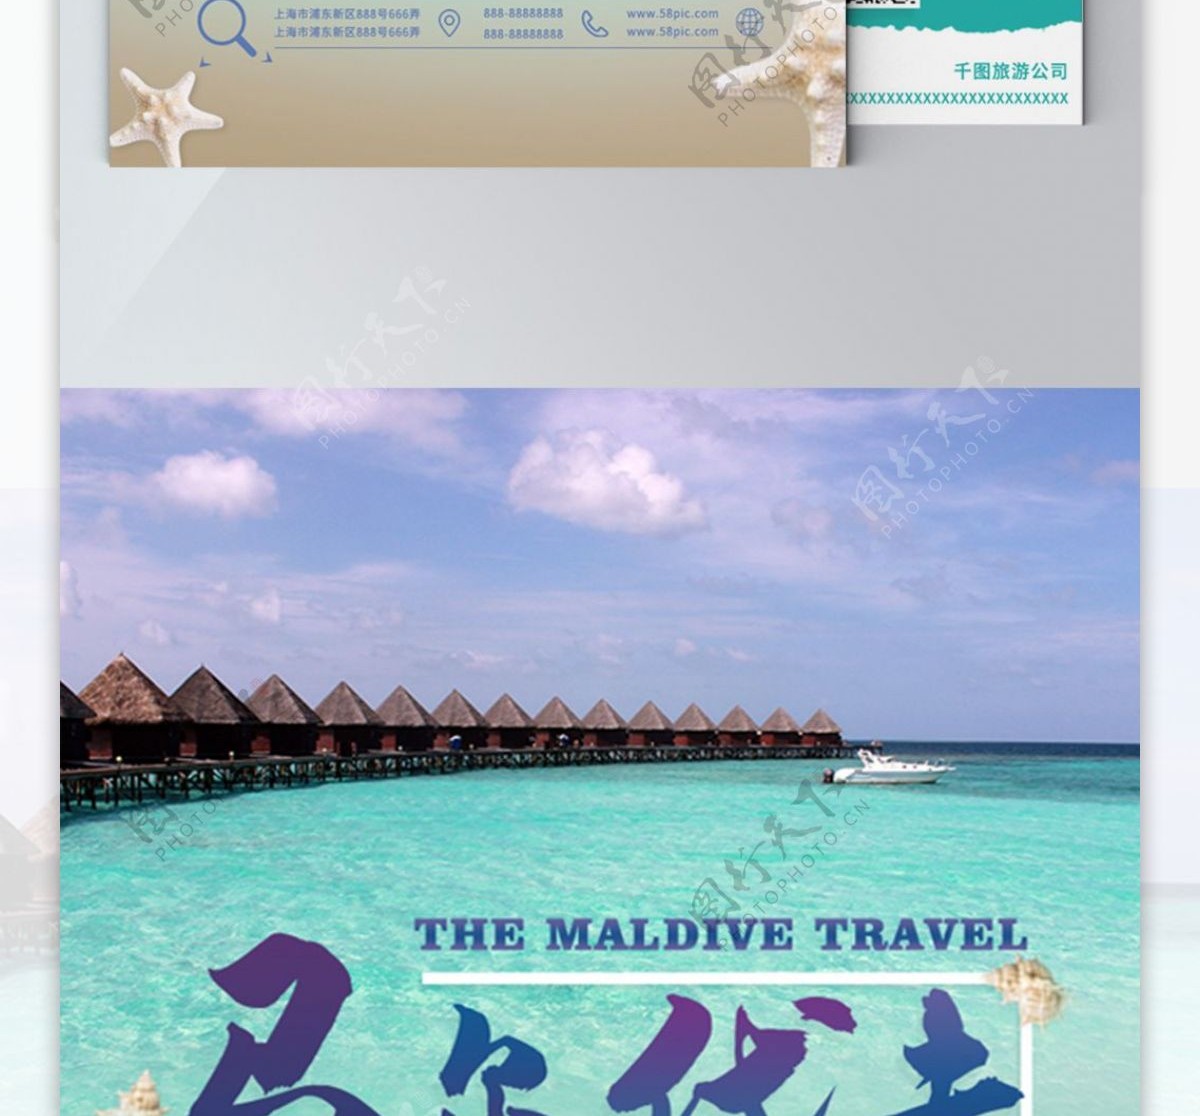 时尚简约旅行社马尔代夫旅游宣传单